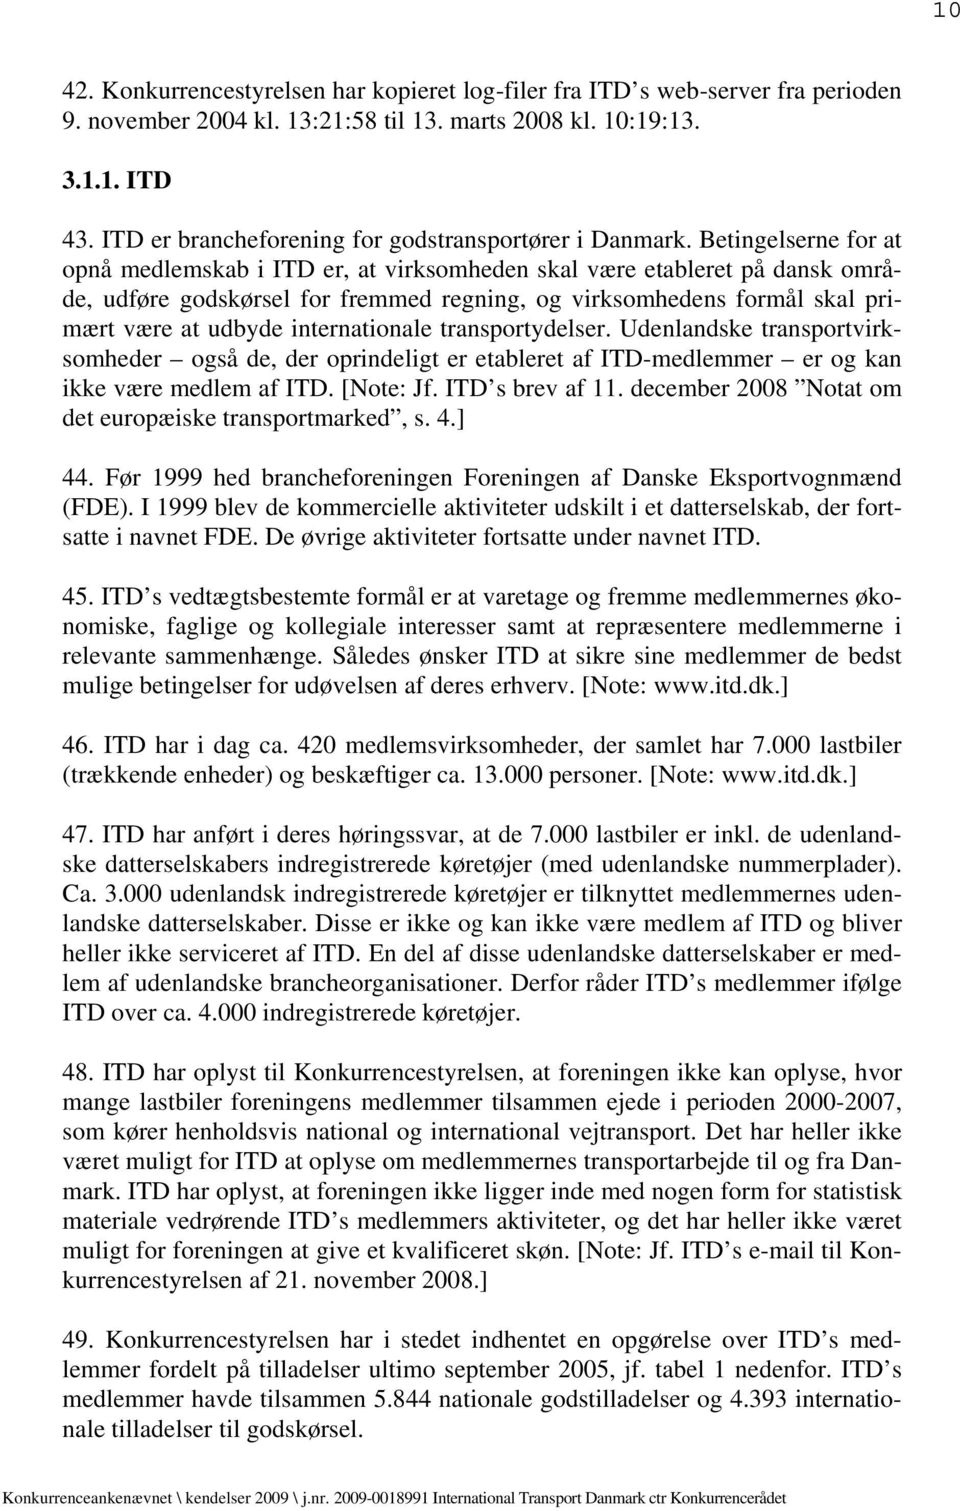 Betingelserne for at opnå medlemskab i ITD er, at virksomheden skal være etableret på dansk område, udføre godskørsel for fremmed regning, og virksomhedens formål skal primært være at udbyde